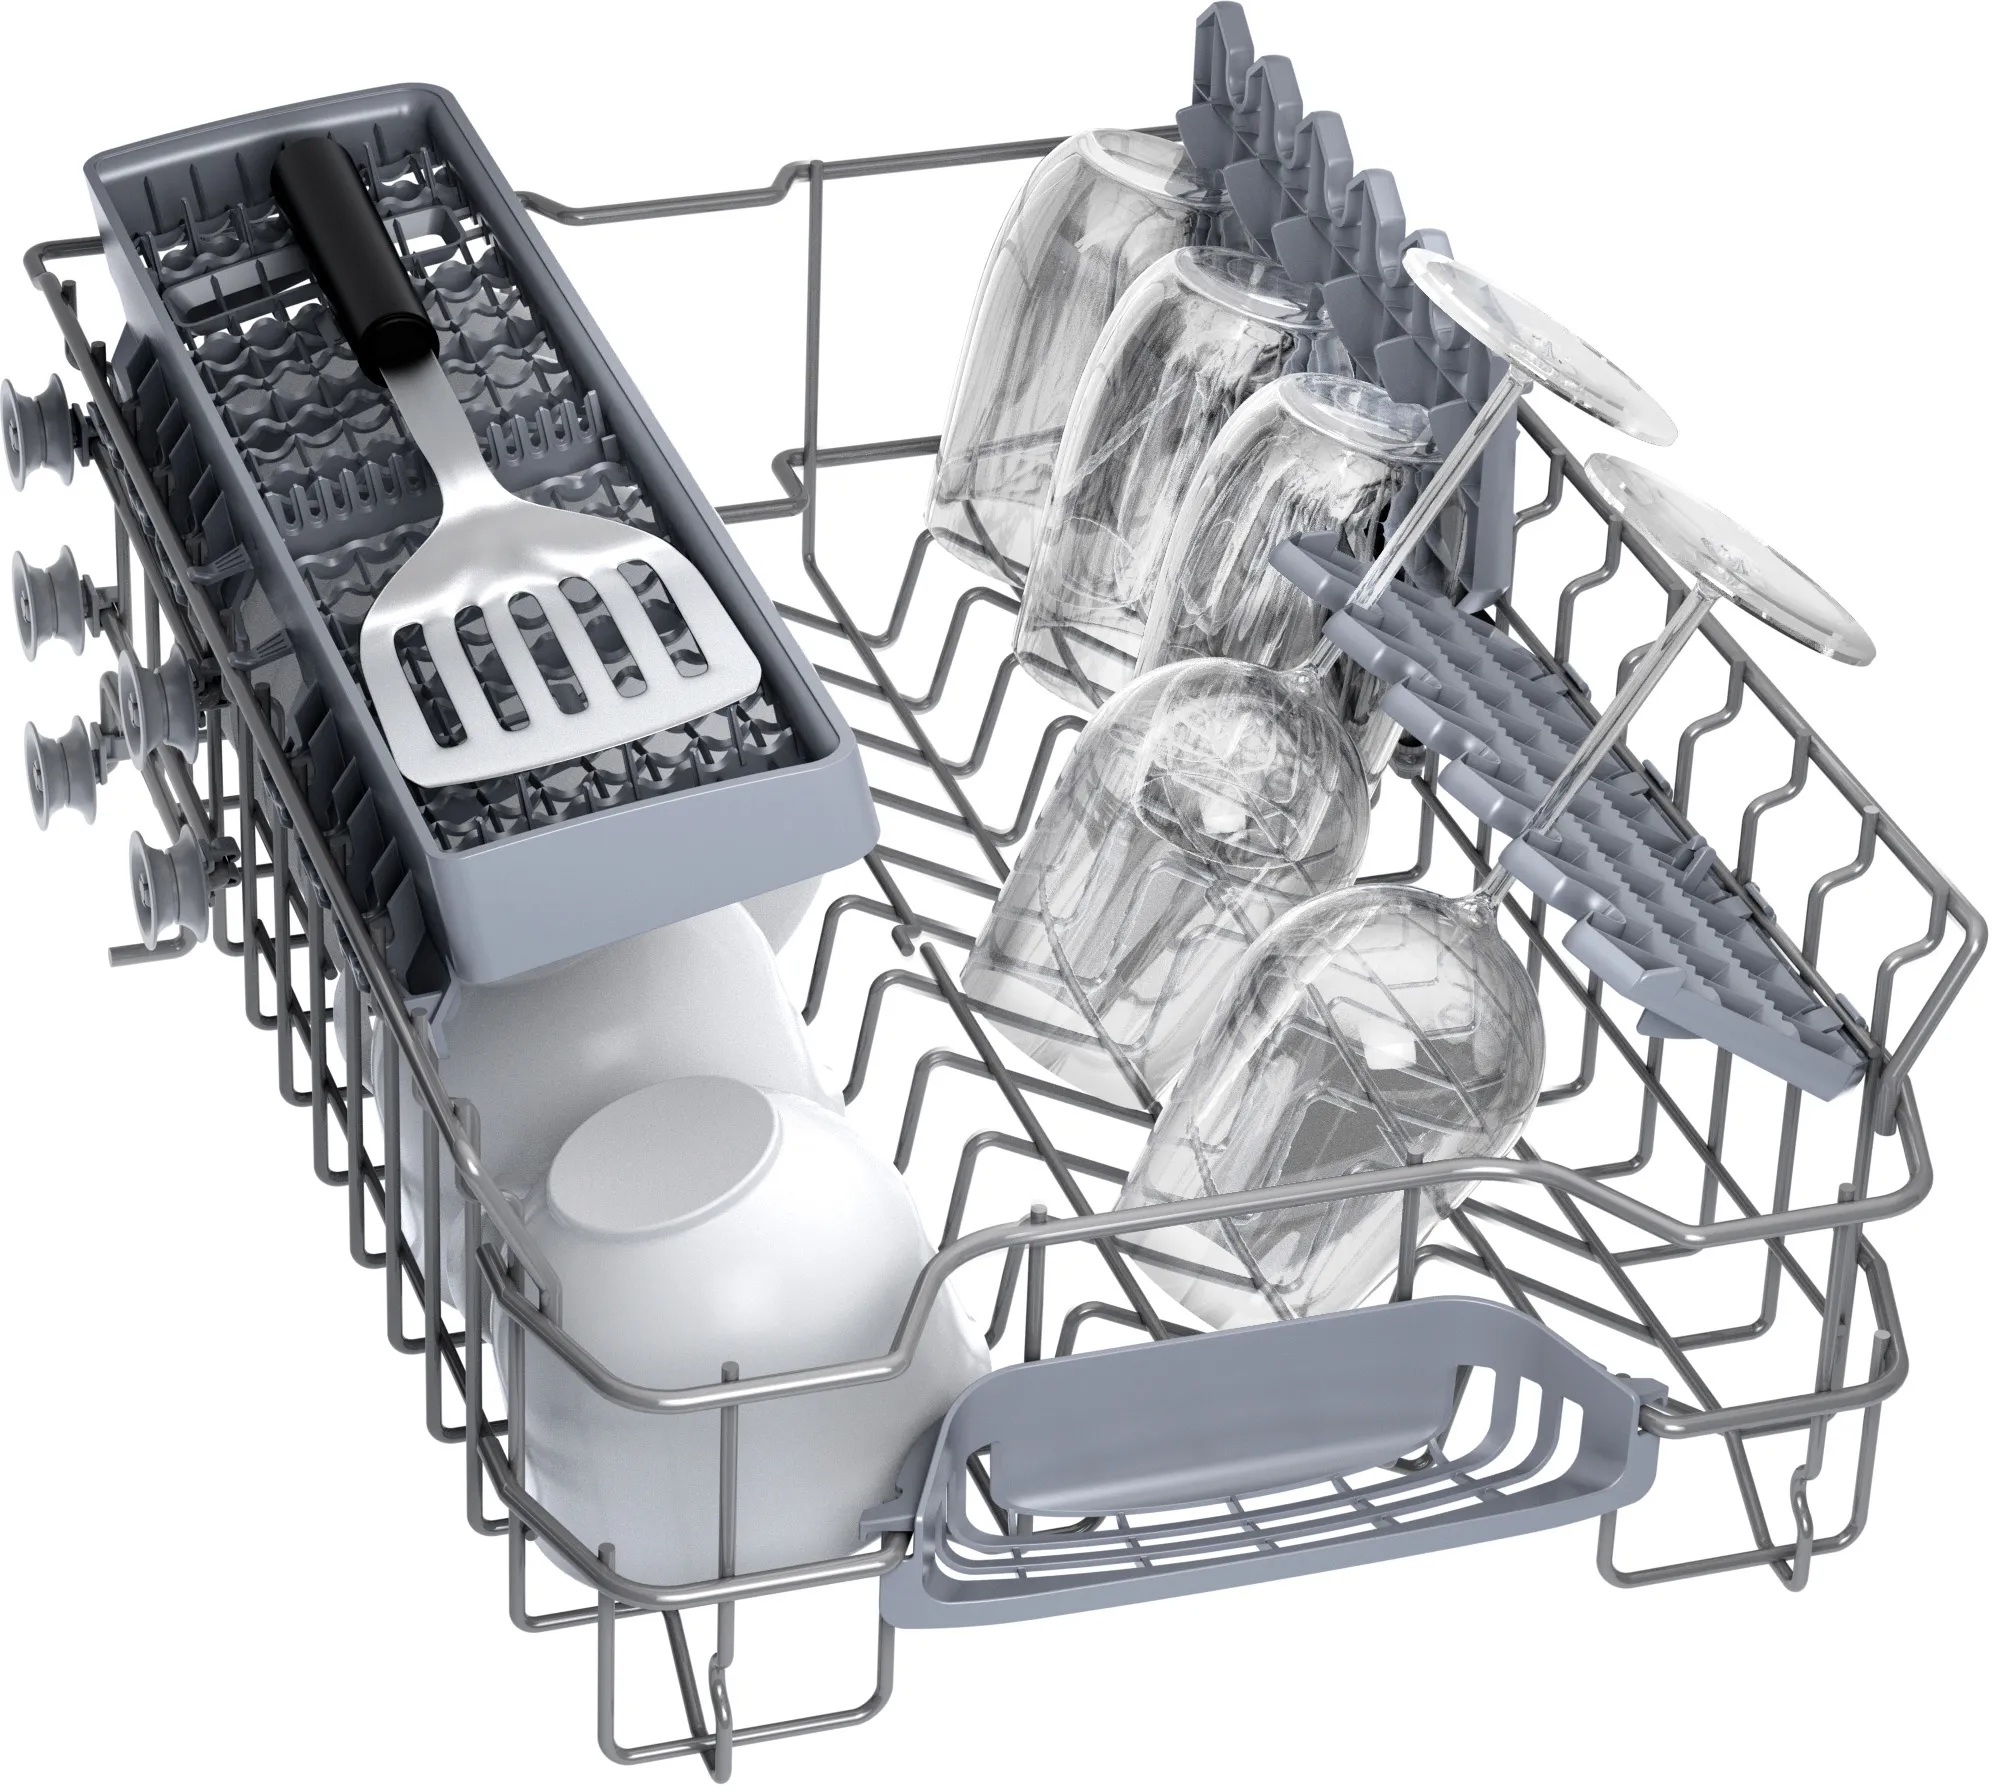 BOSCH SPV2HKX42E - Lave-vaisselle (Dispositif intégré)